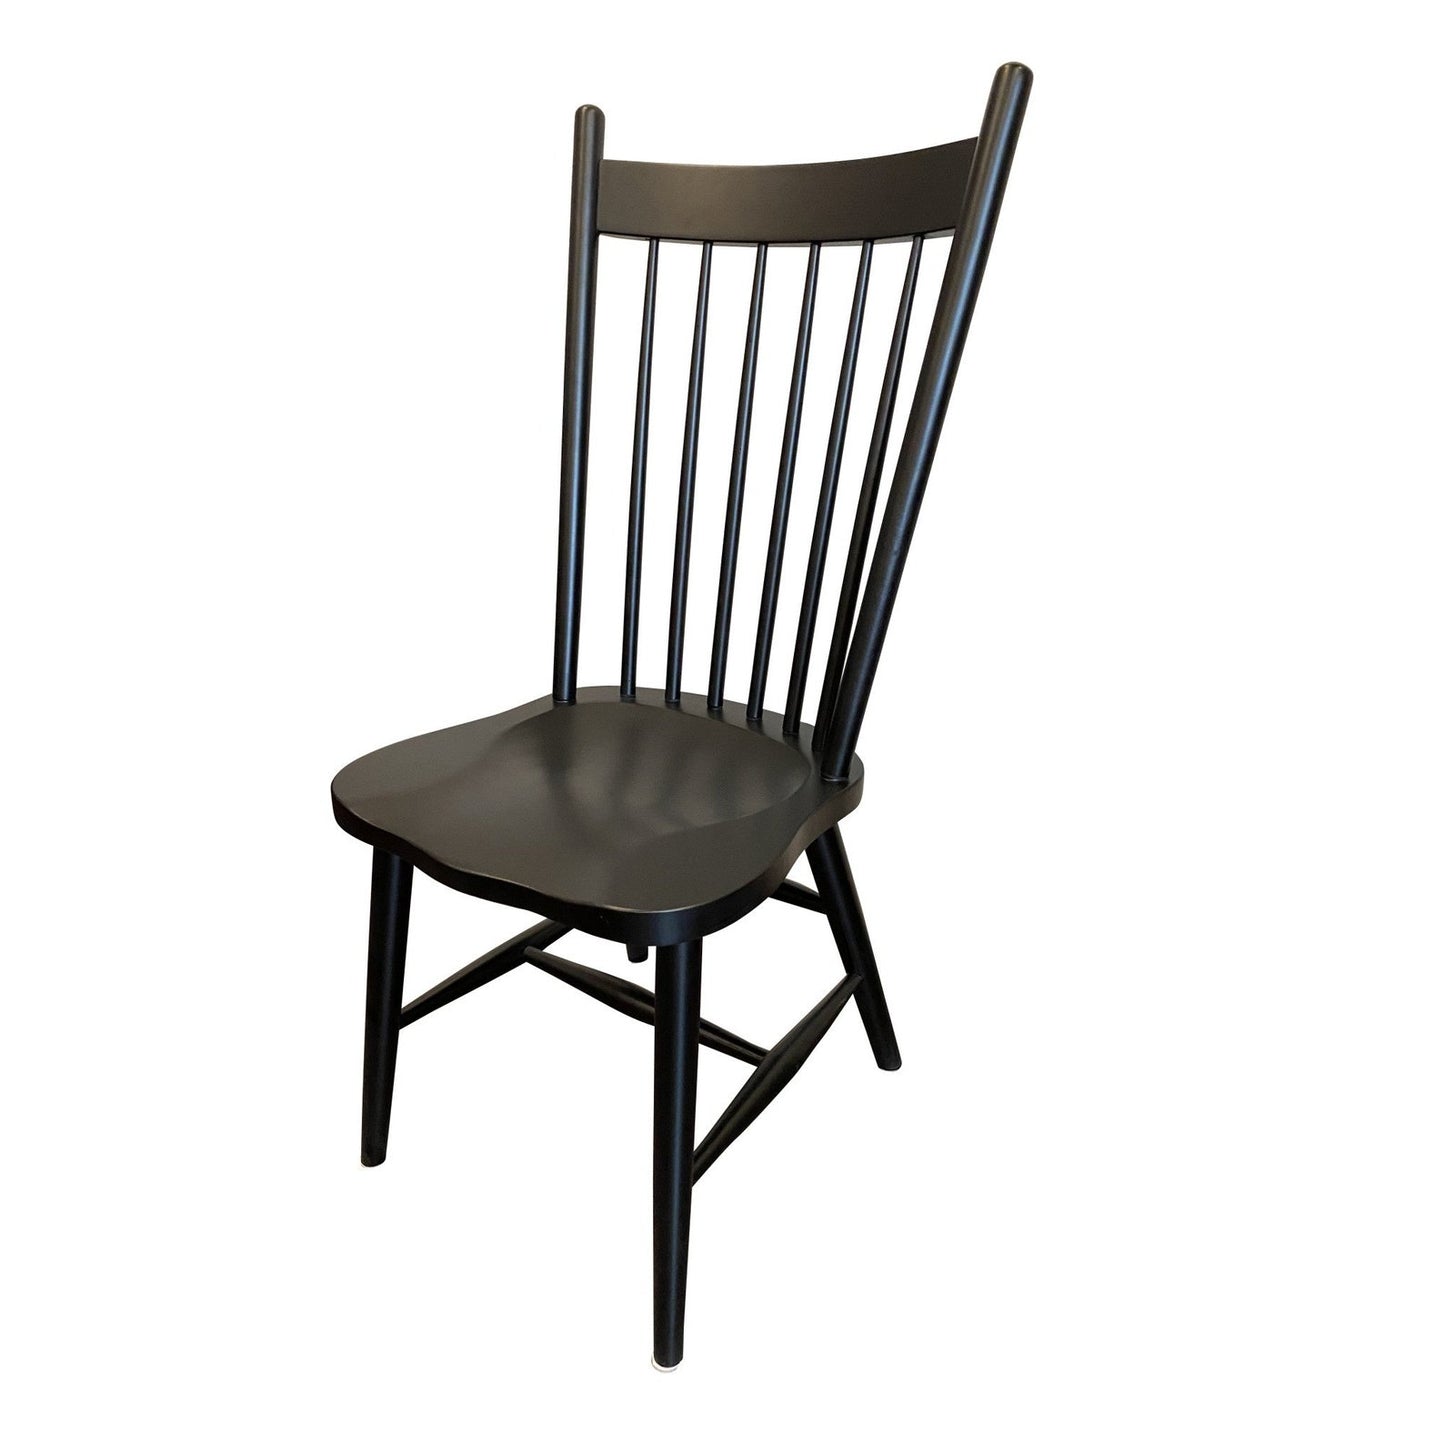 Rustic Farmhouse Side Chair